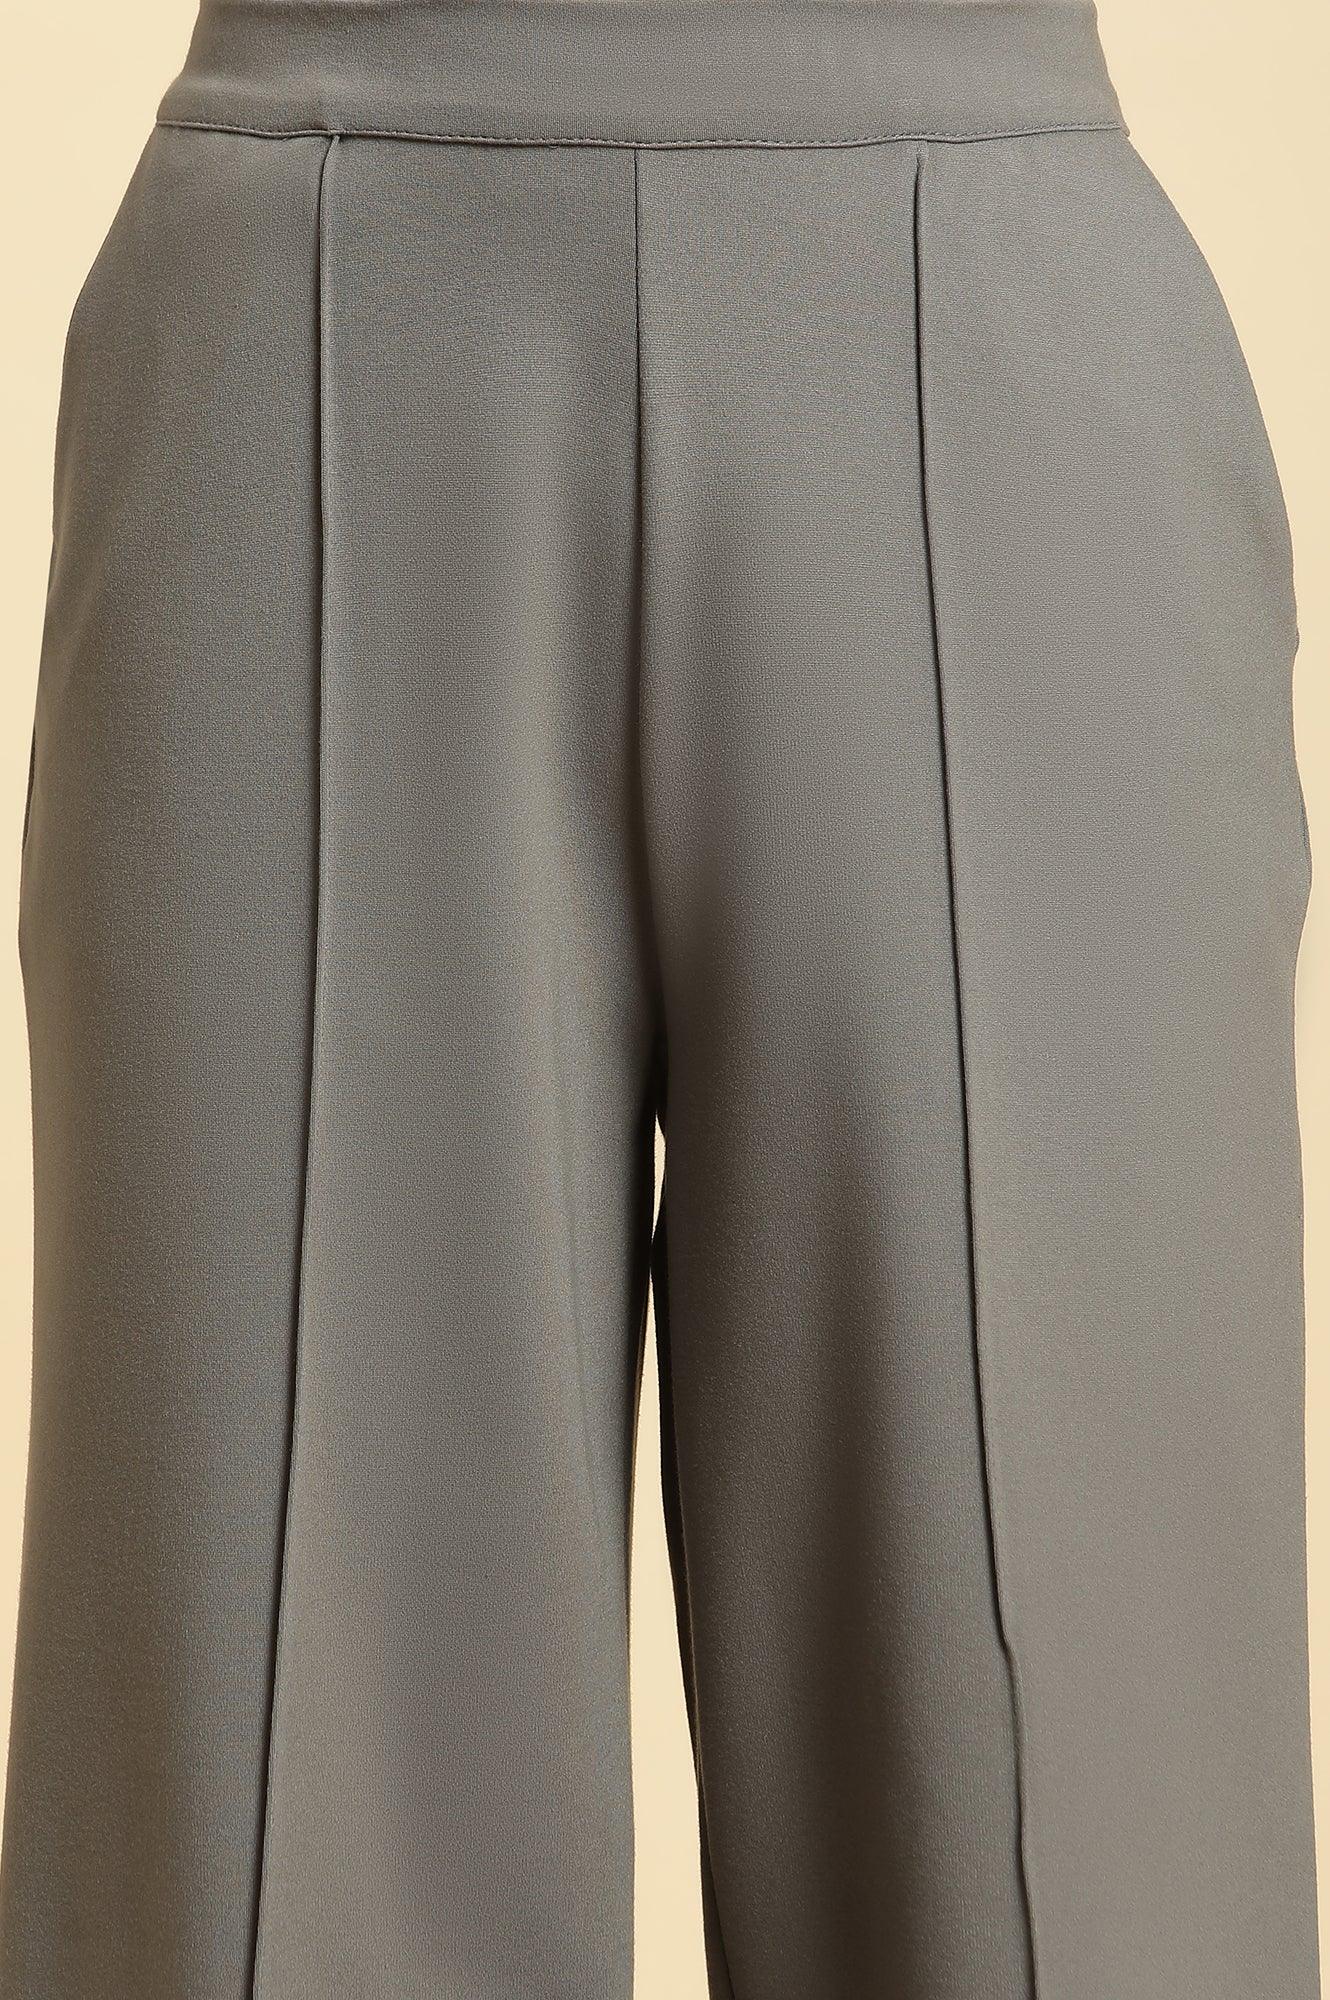 Grey Pin Tuck Trouser Pants - wforwoman